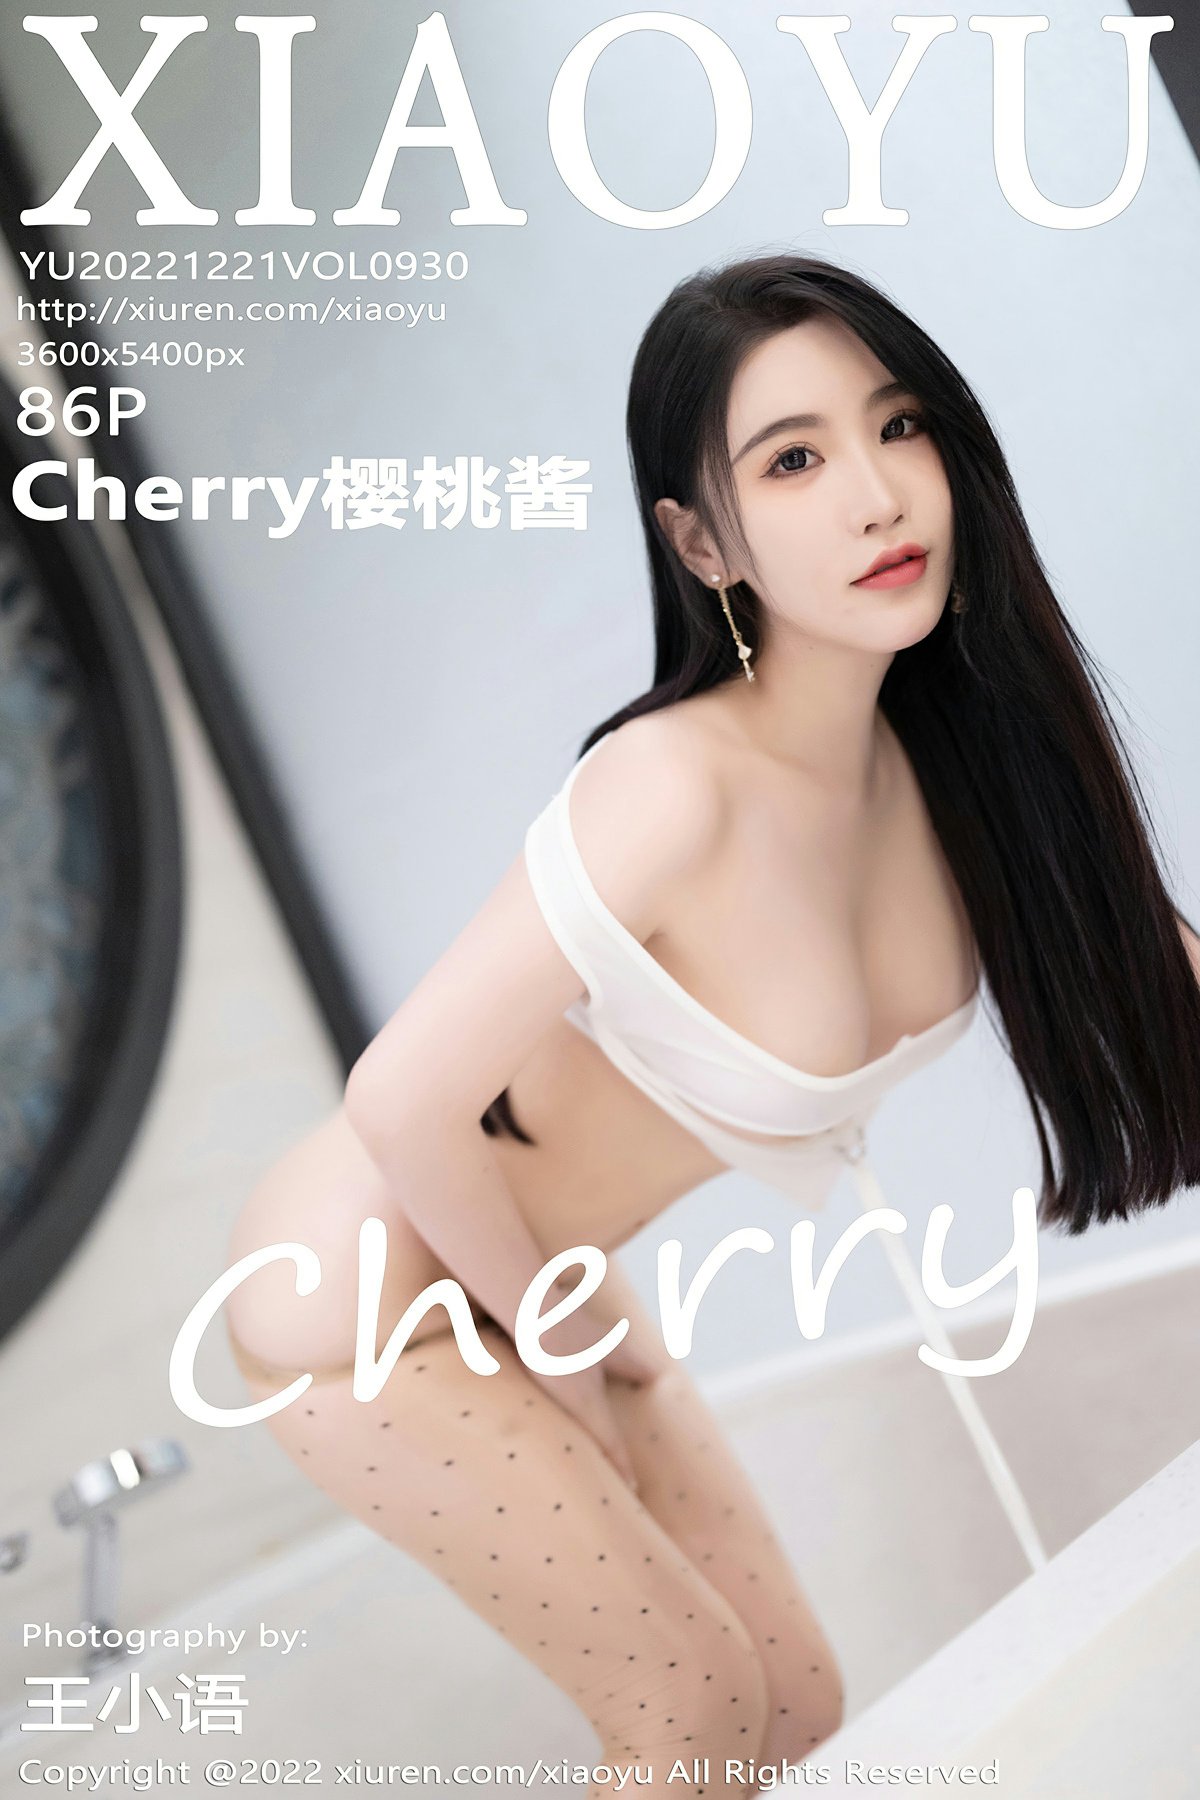 [XIAOYU语画界] VOL.930 Cherry樱桃酱1 